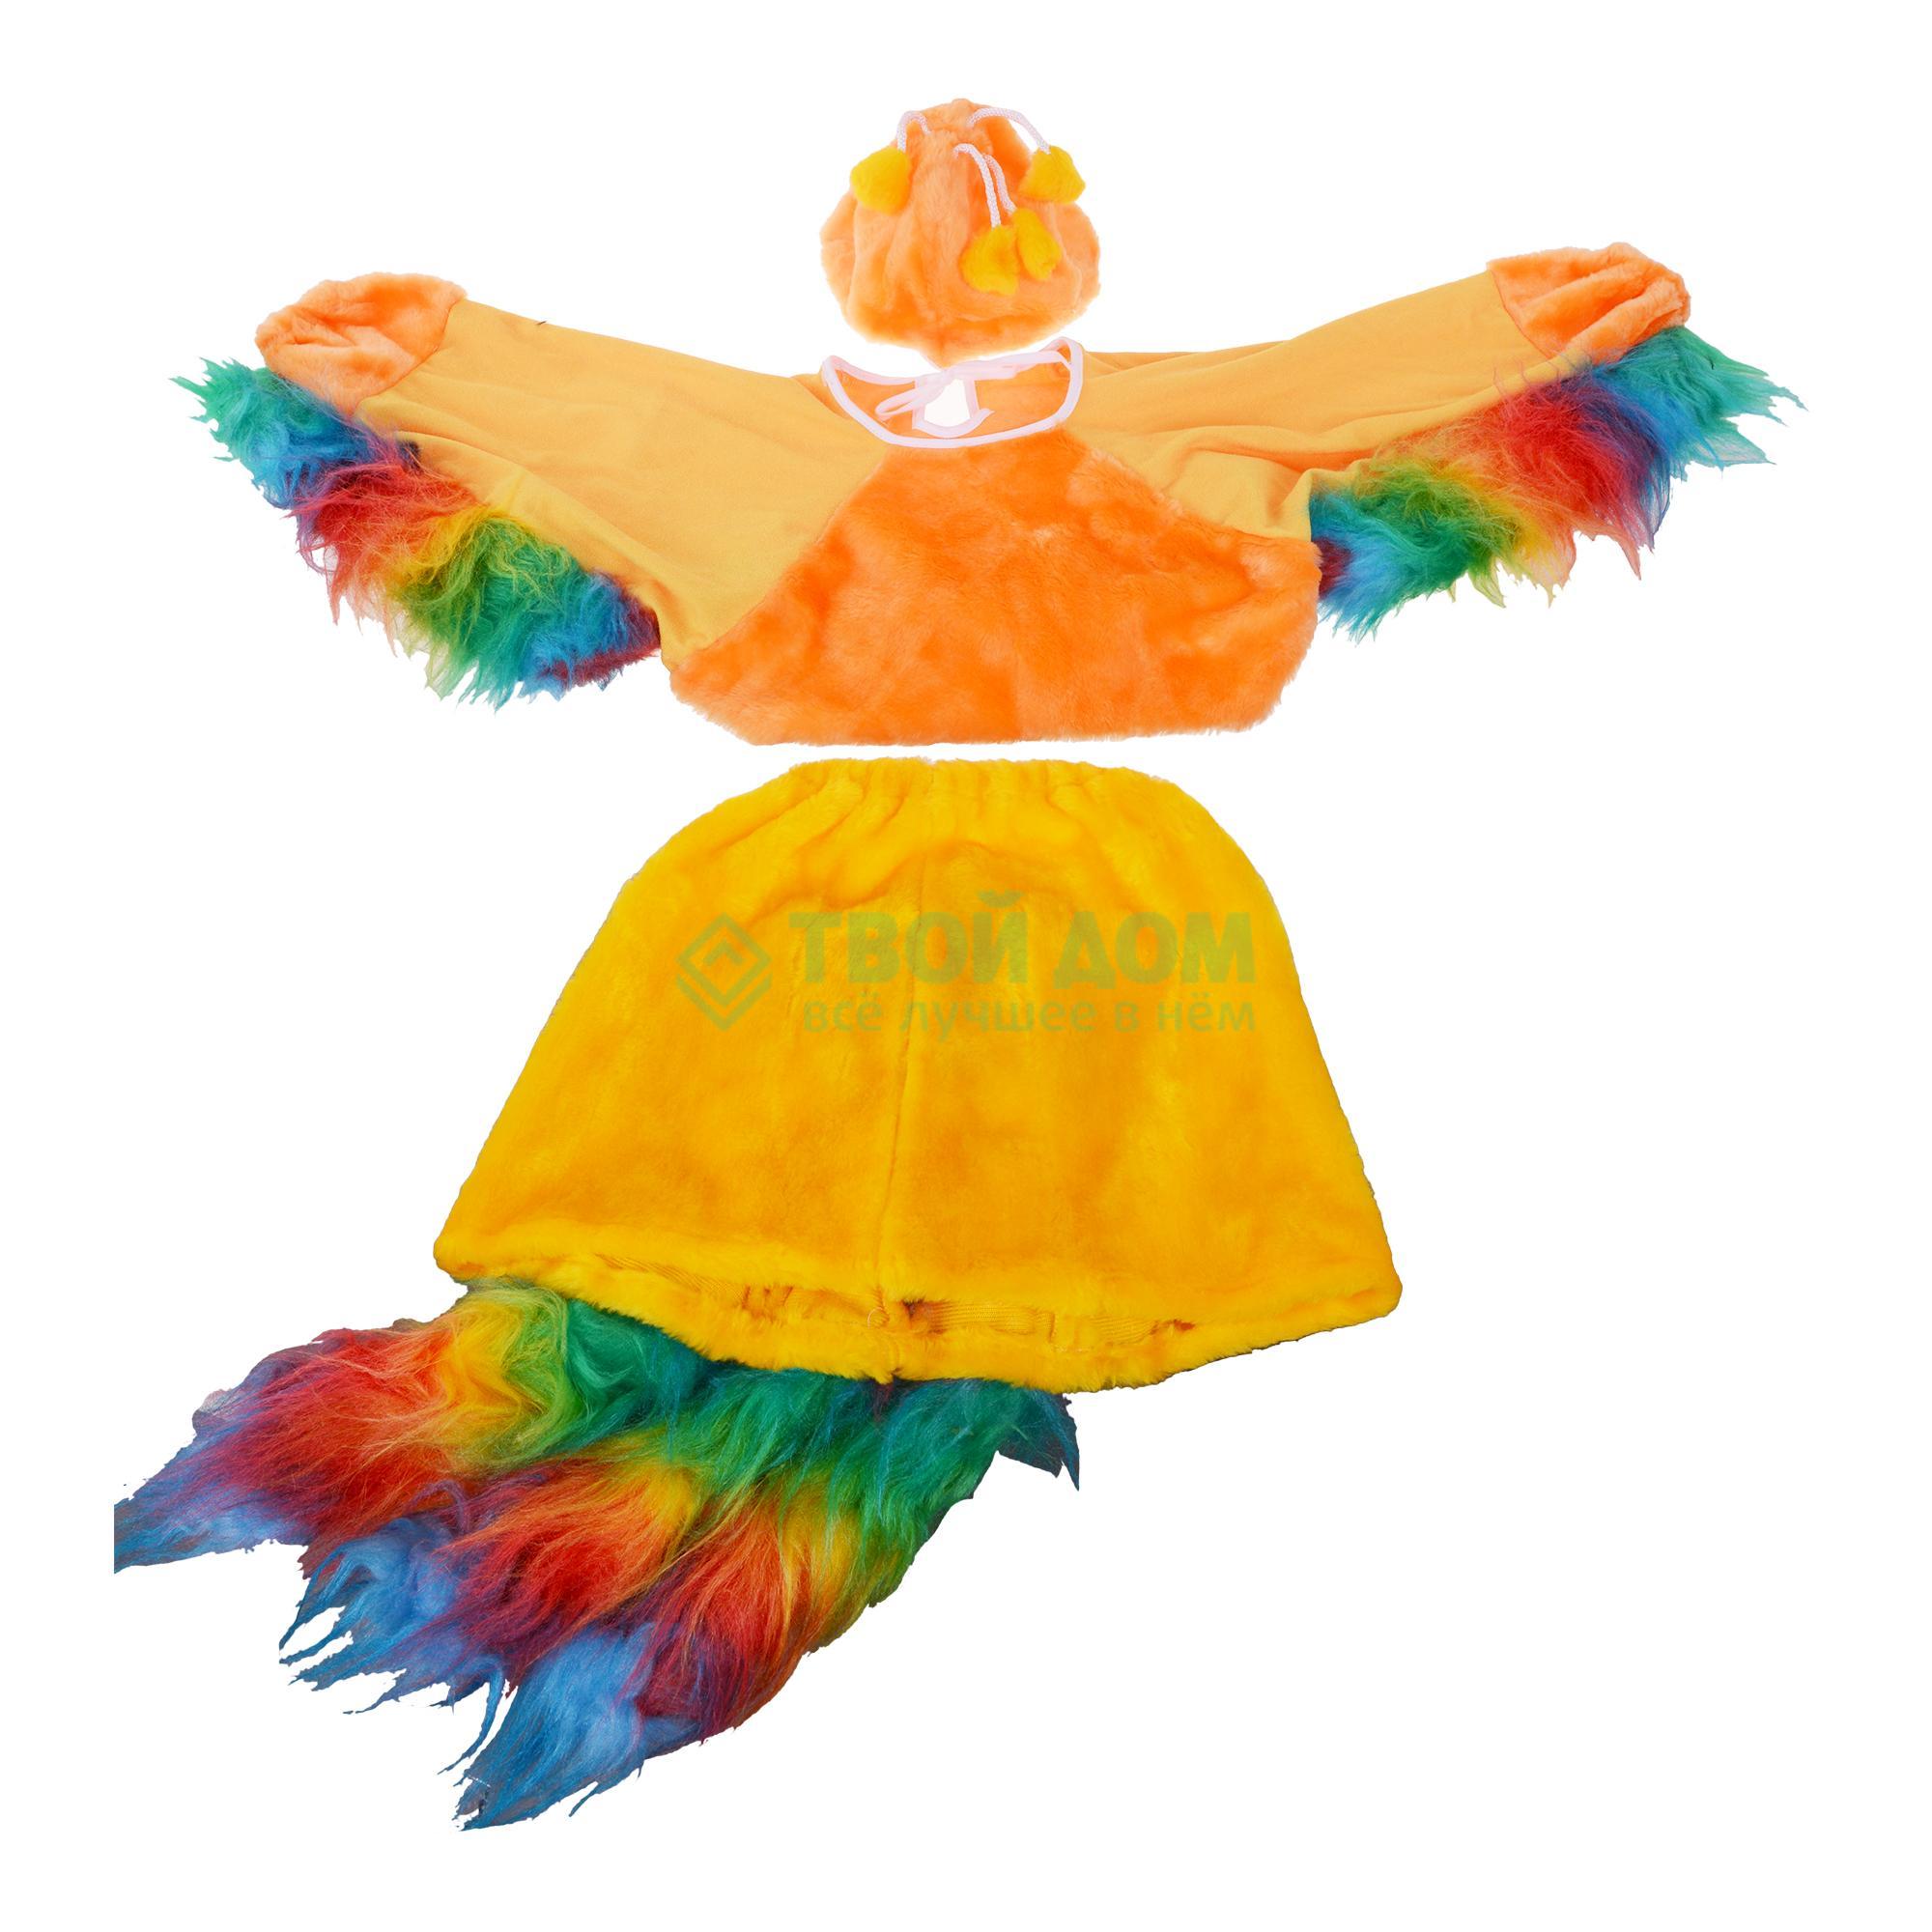 Артэ-Грим Карнавальный костюм жар птица костюм карнавальный детский артэ грим снегурочка 34 36